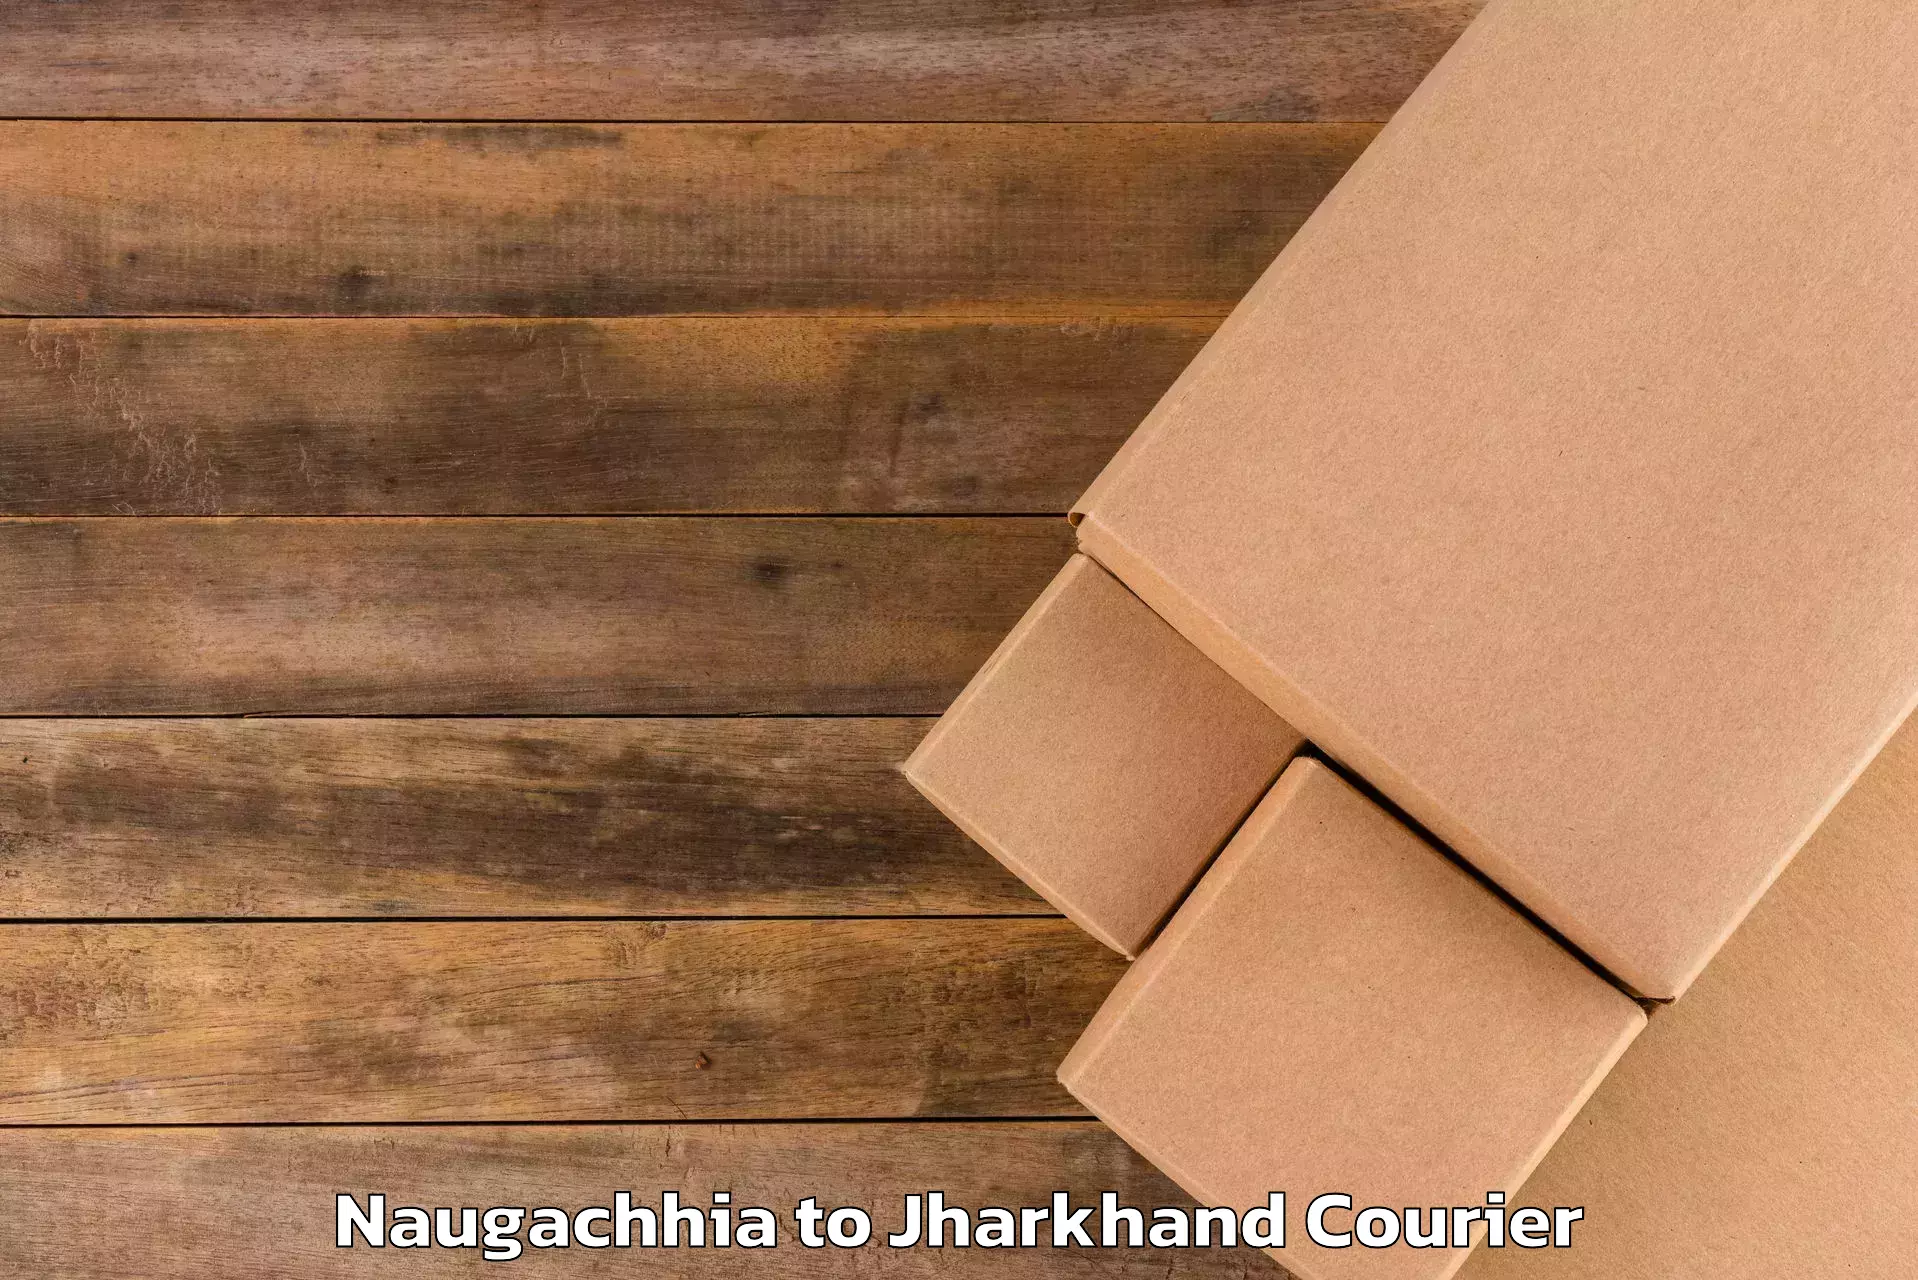 Luggage shipment specialists Naugachhia to East Singhbhum